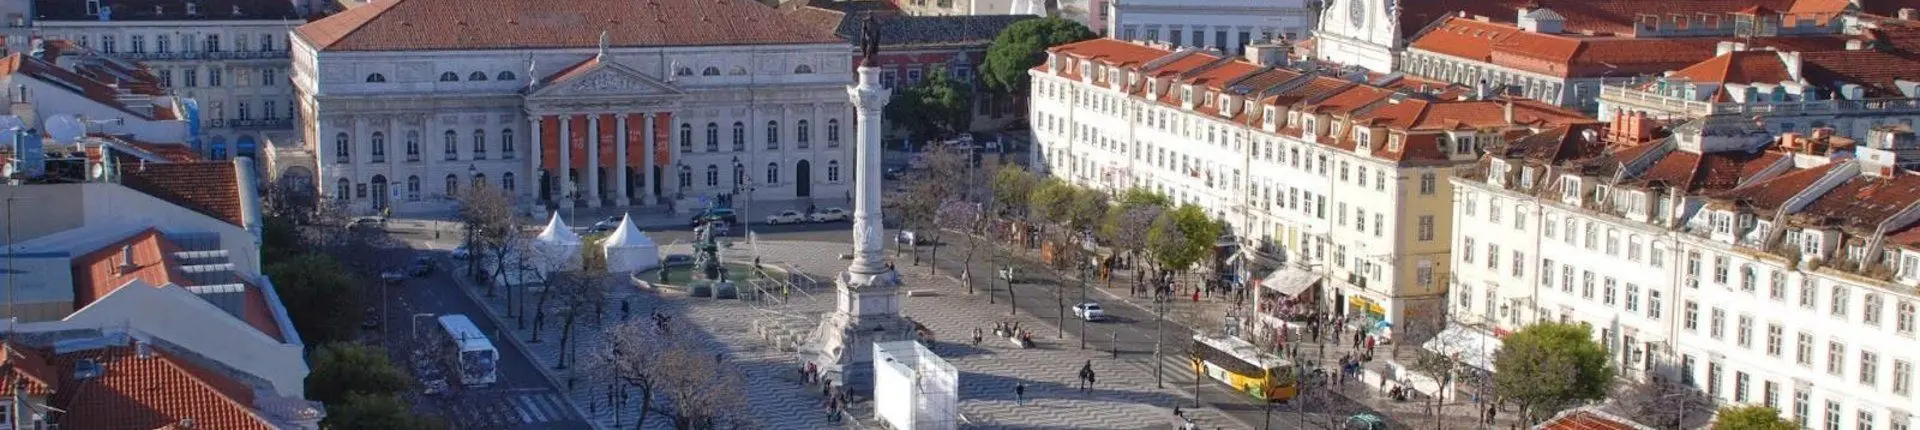 Rossio Meydanı